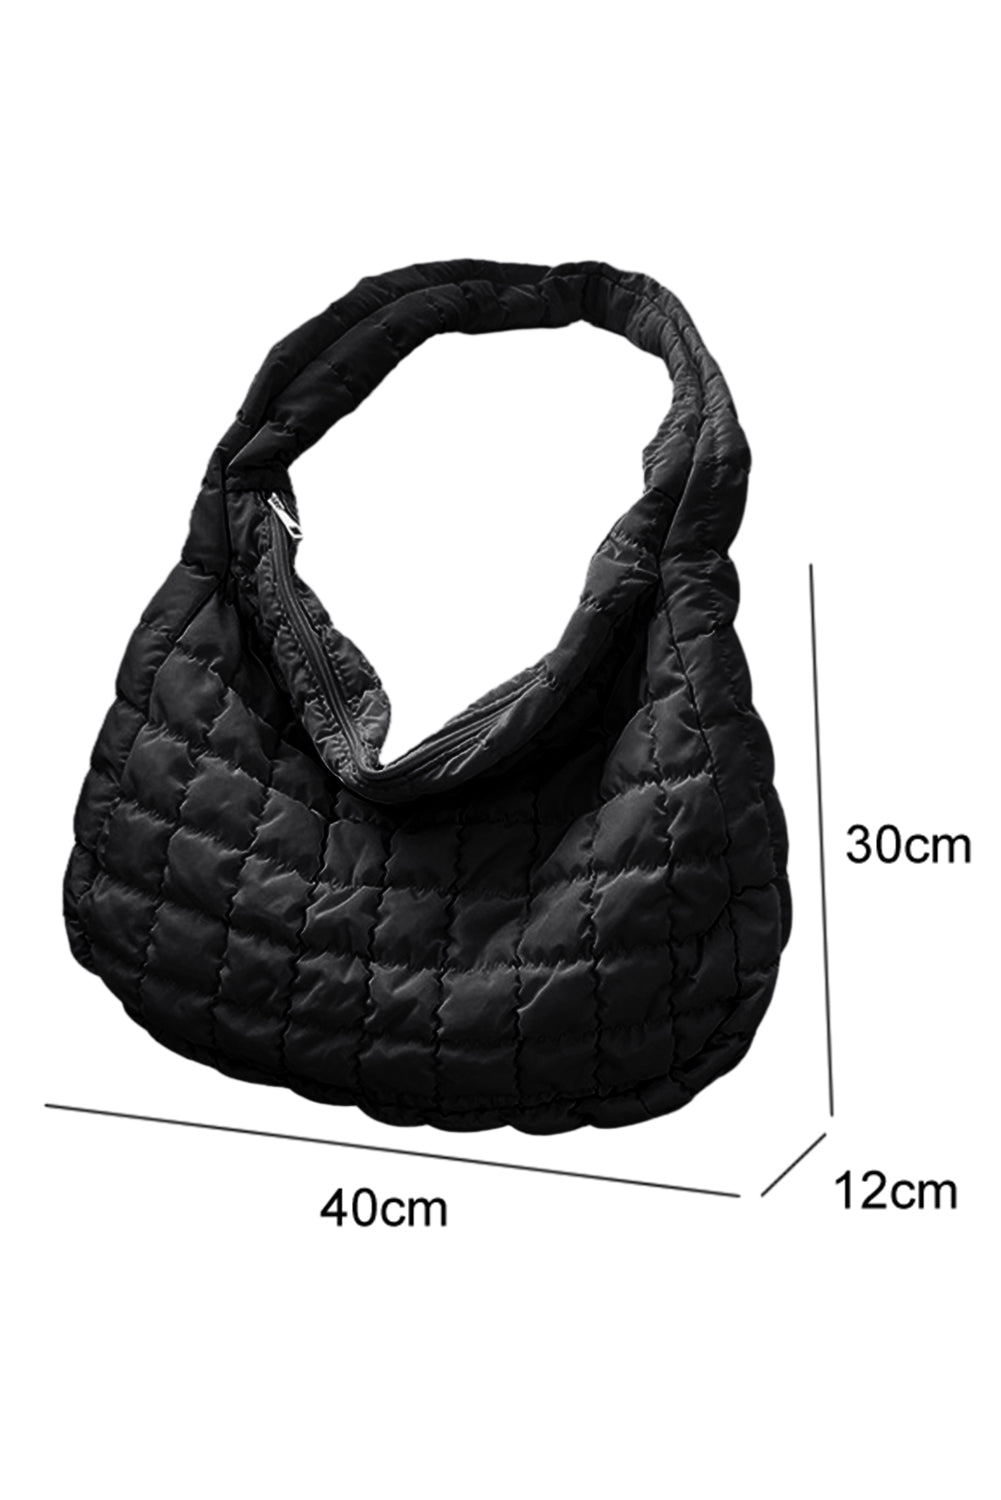 Light French Beige Quilted Zipper Large Shoulder Bag